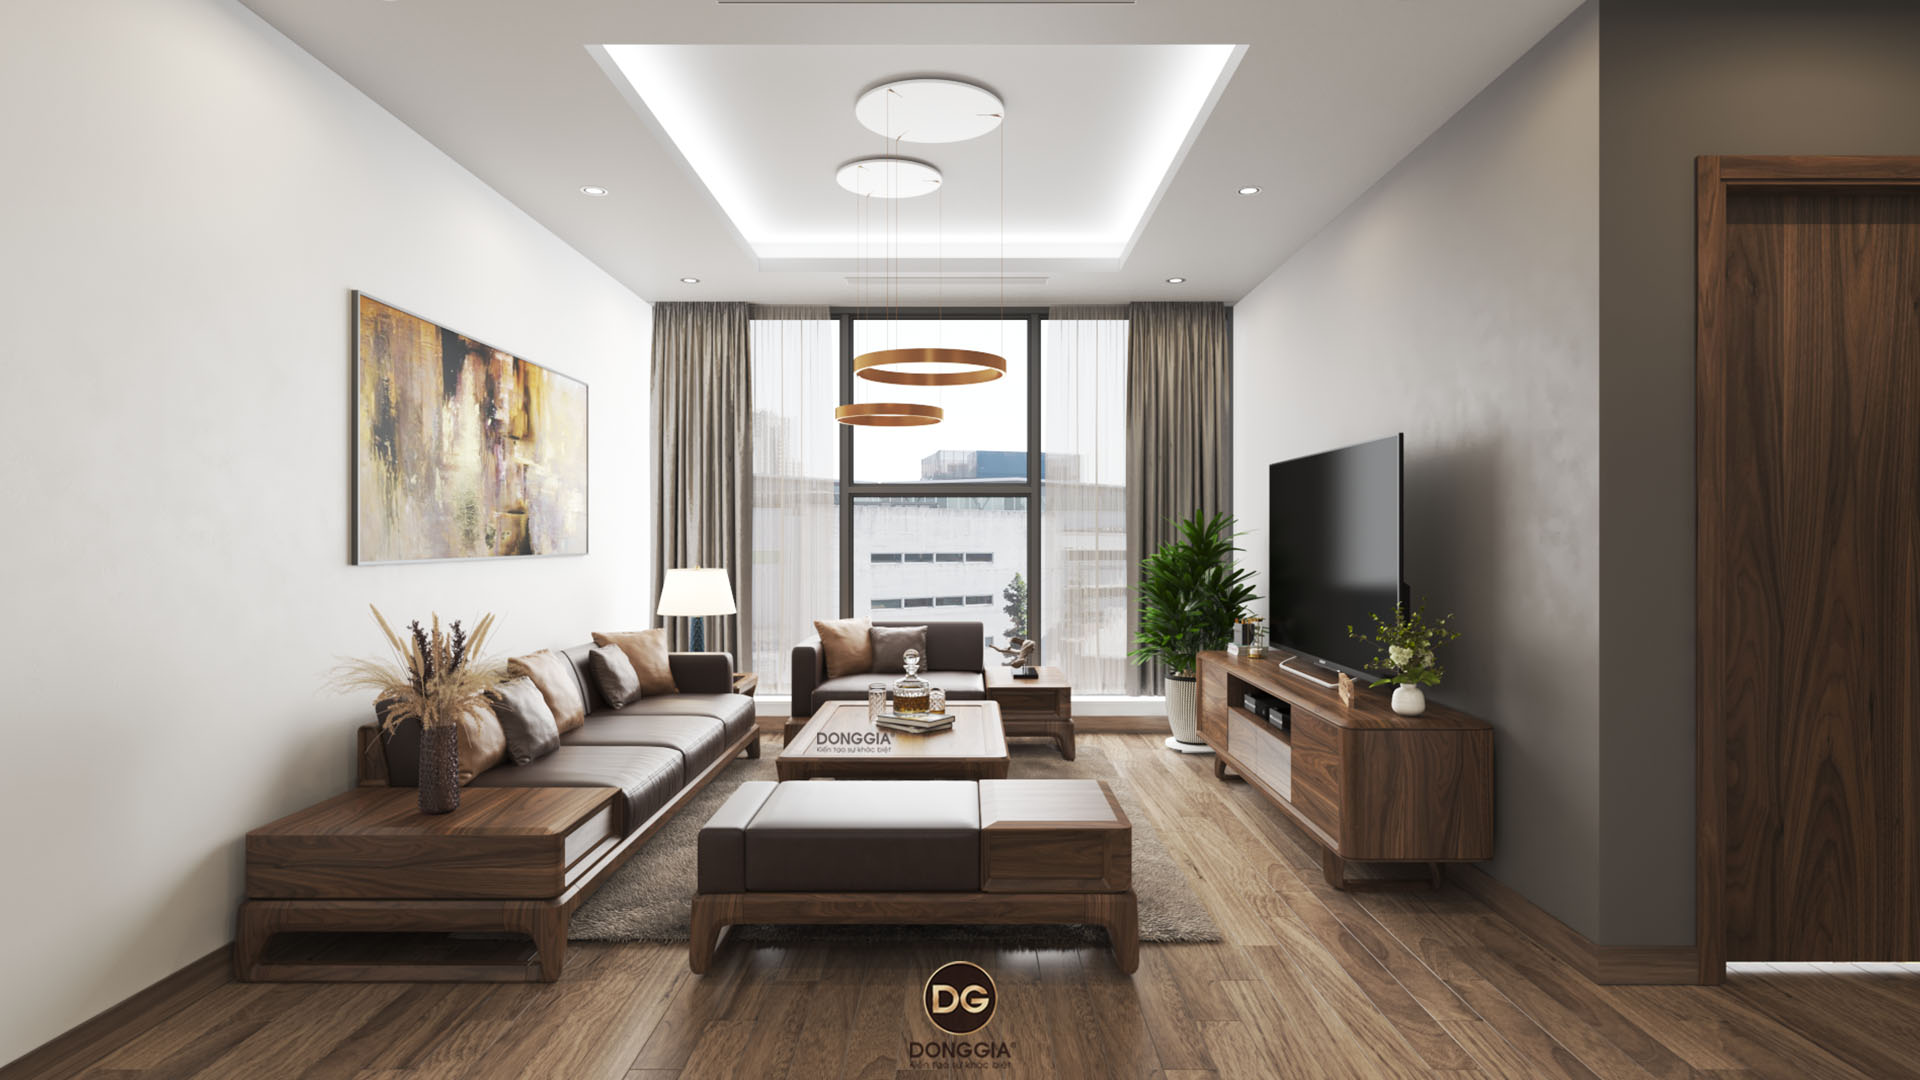 10 Mẫu thiết kế nội thất phòng khách chung cư đẹp 2021